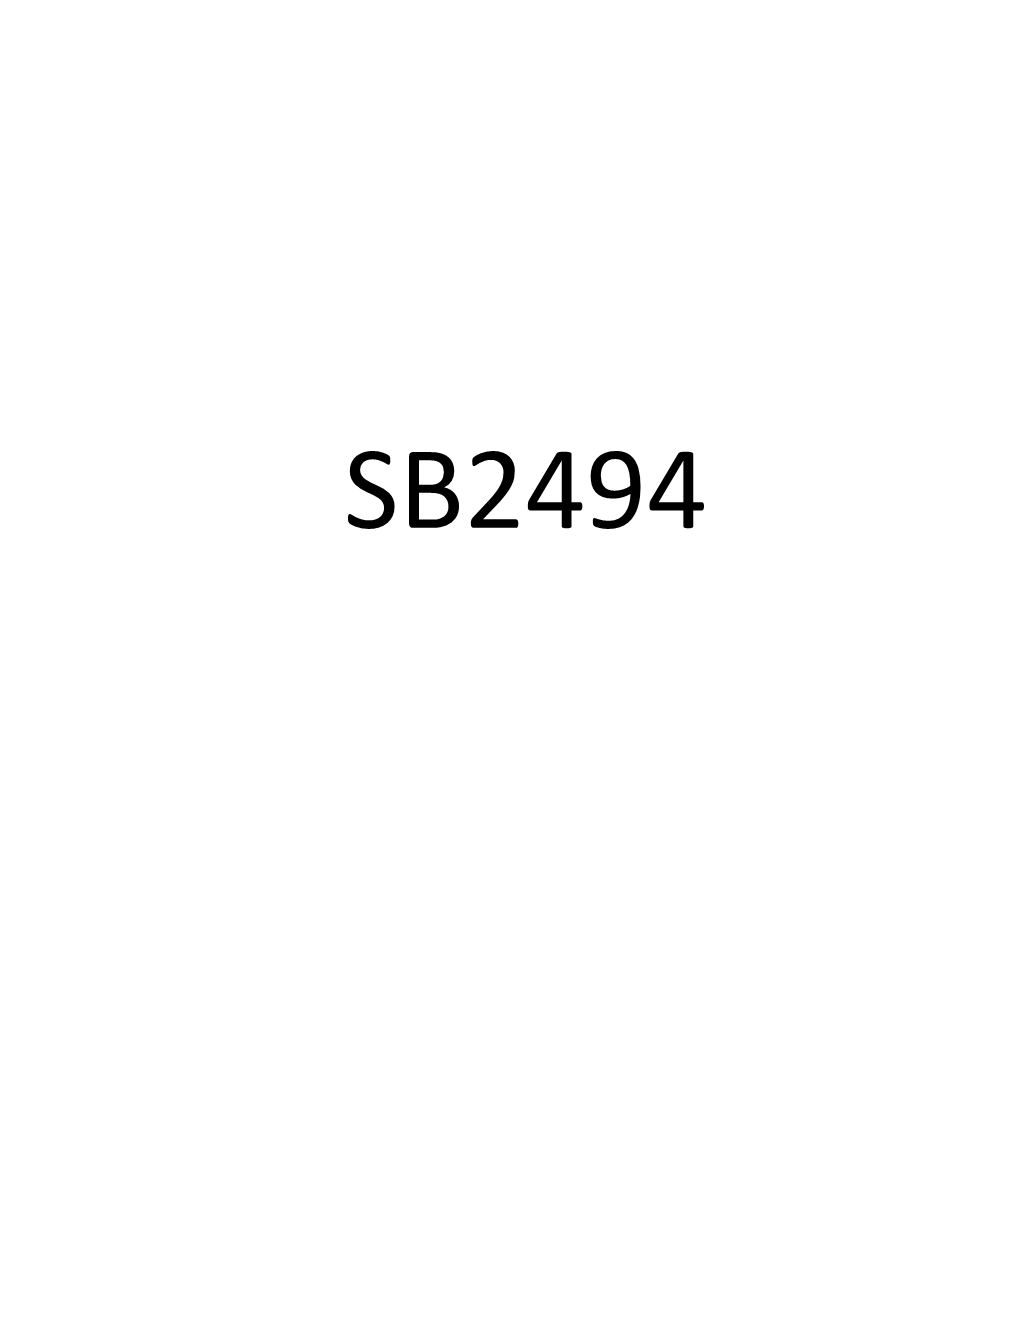 SB2494 TESTIMONY JDL 02-29-12.Pdf